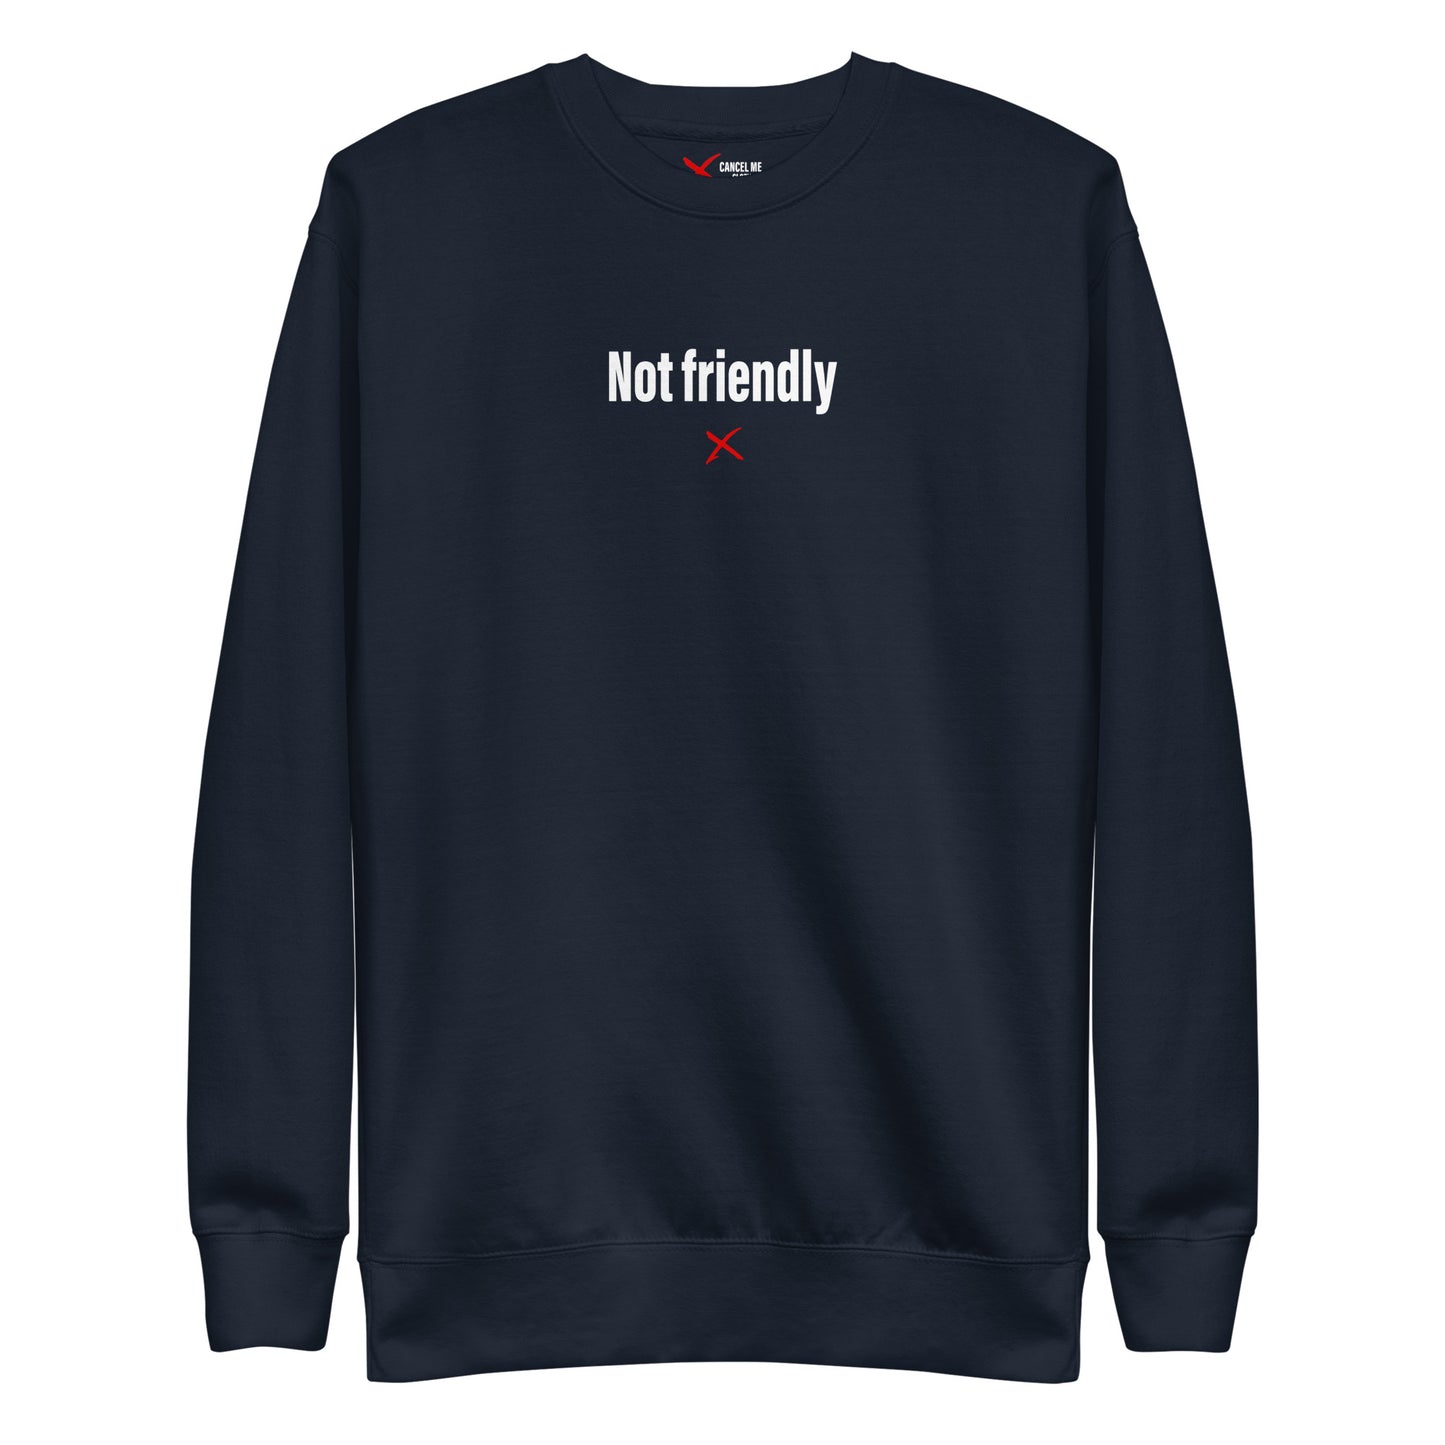 Not friendly - Sweatshirt